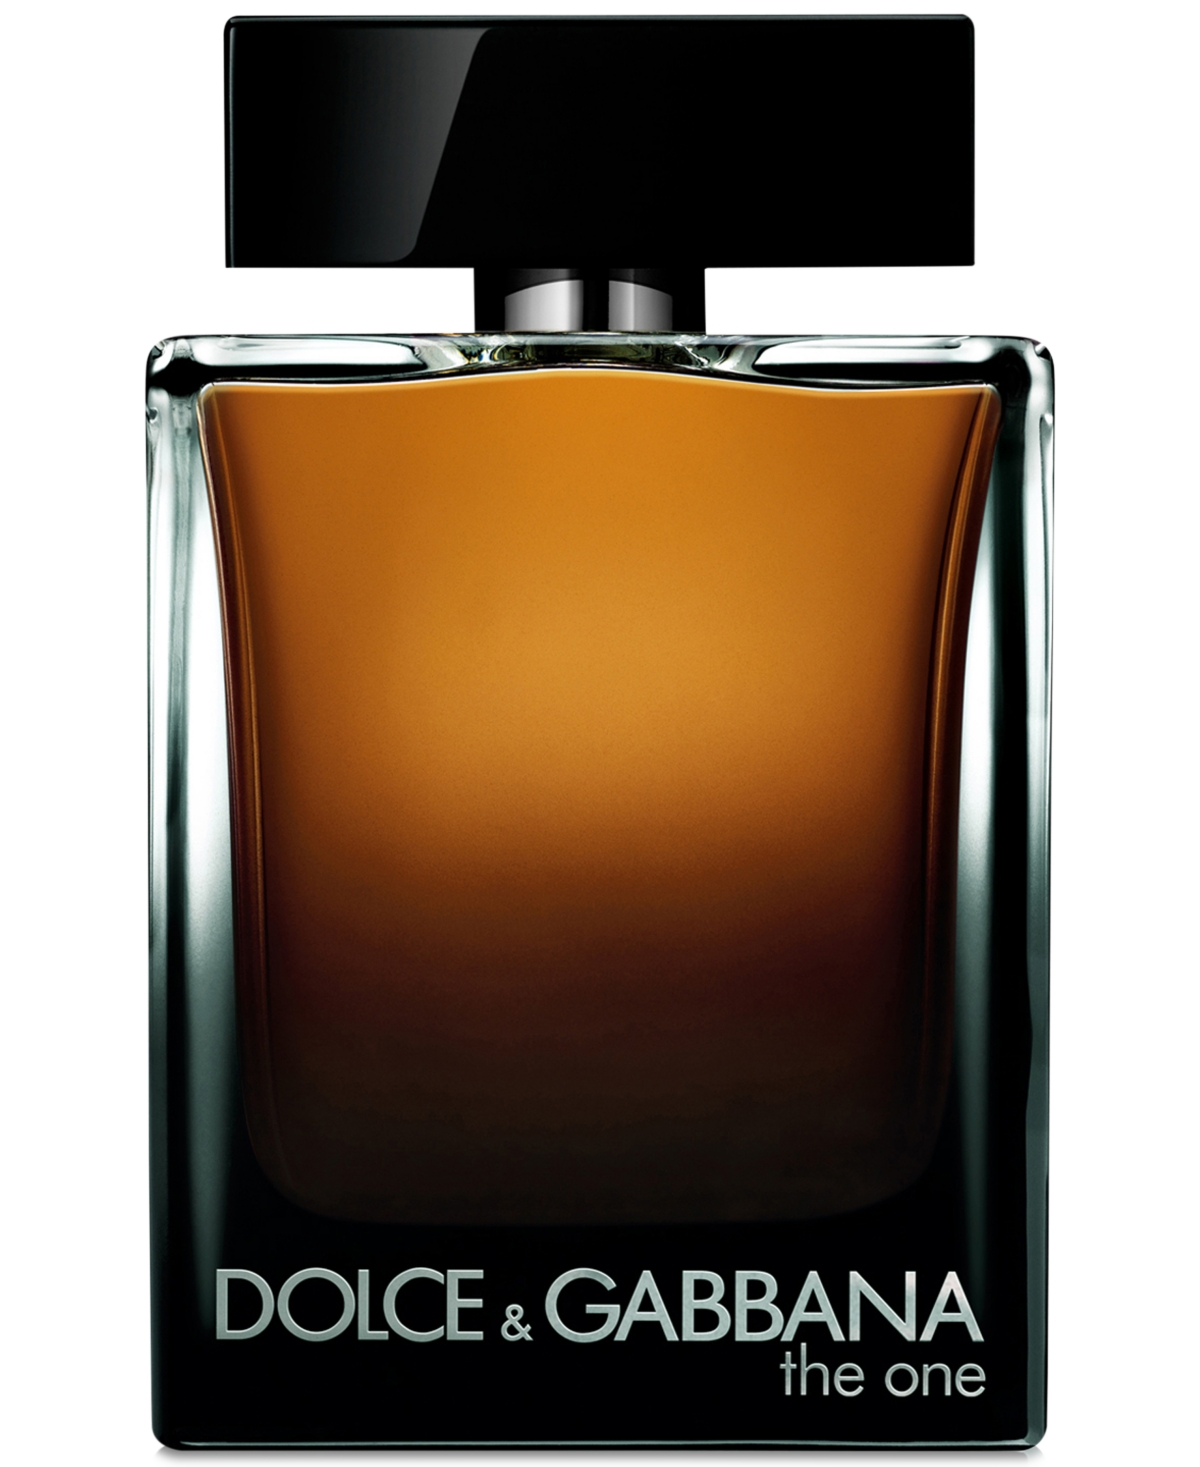 Dolce&Gabbana Men's The One for Men Eau de Parfum Spray, 5 oz.